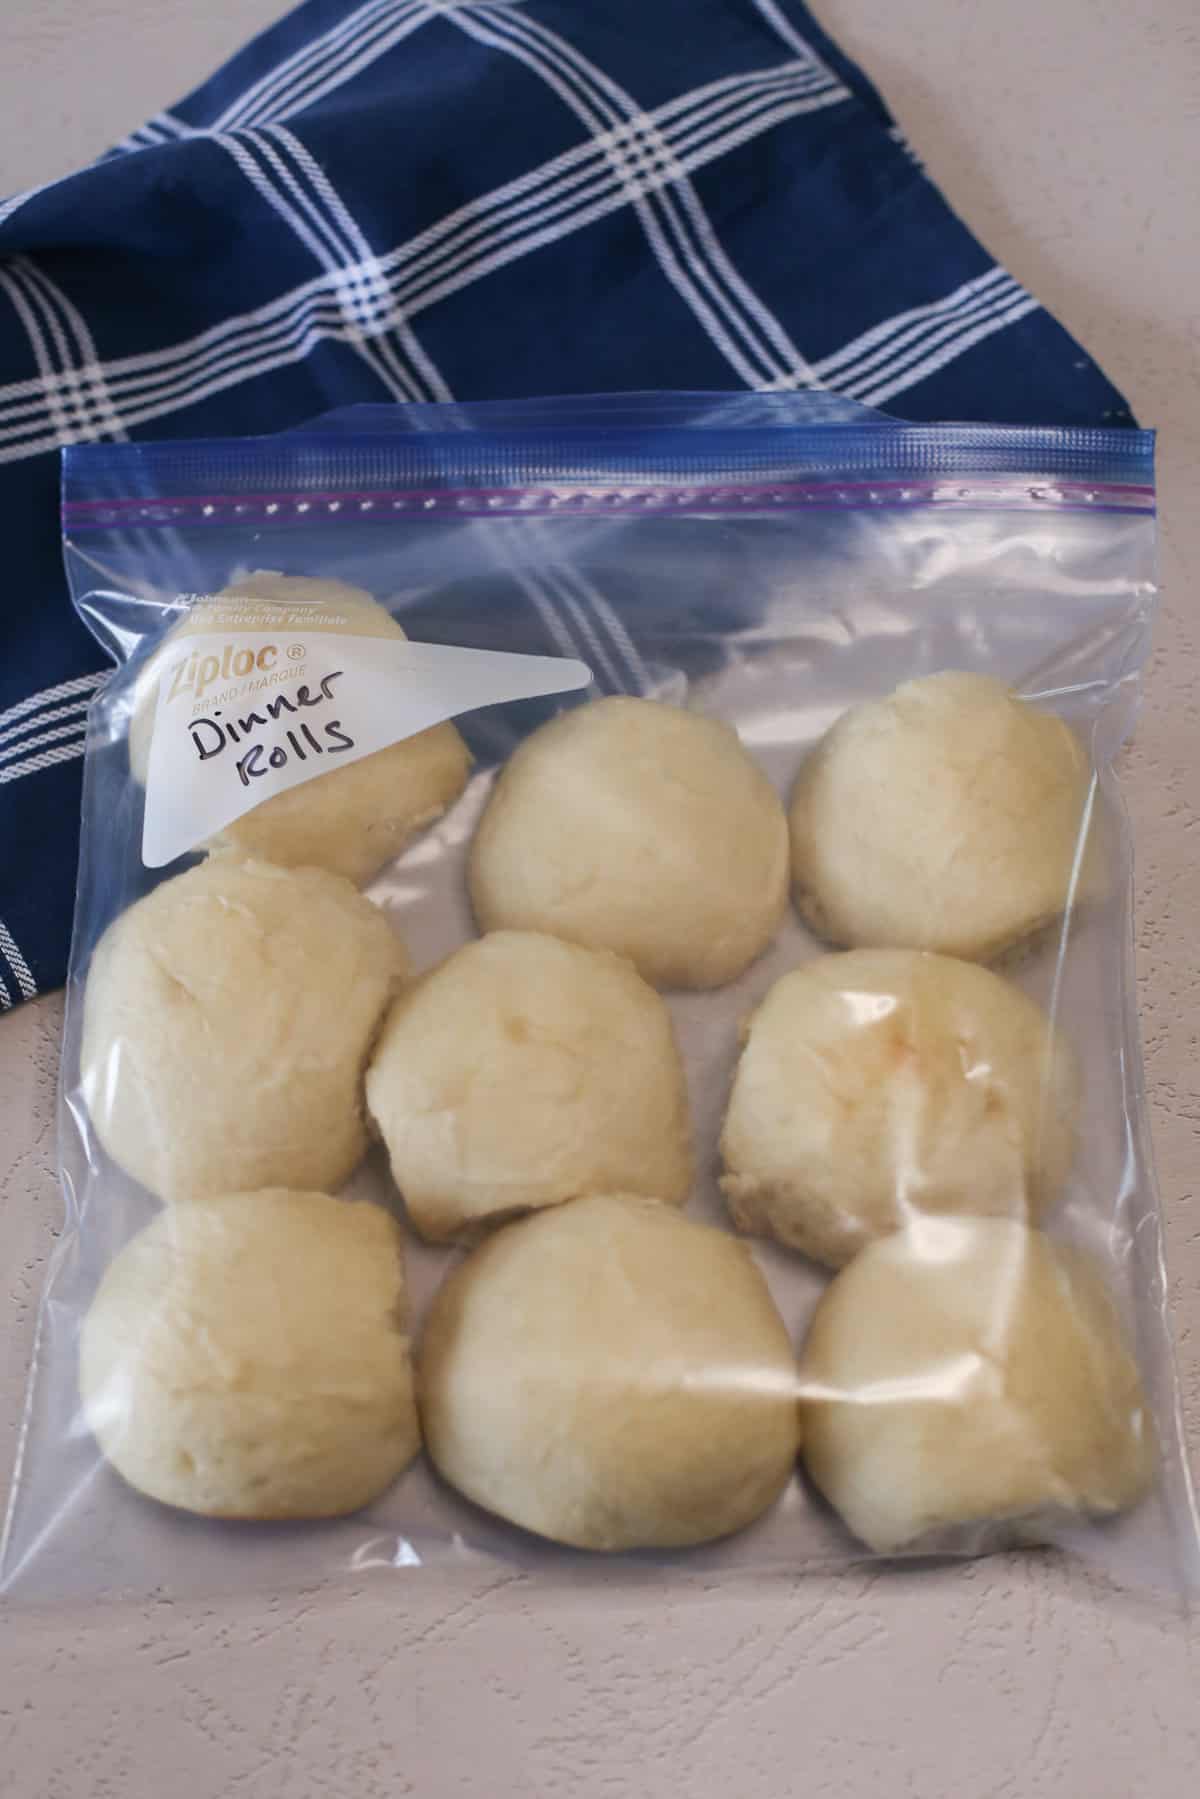 Bread machine rolls in a freezer bag. 